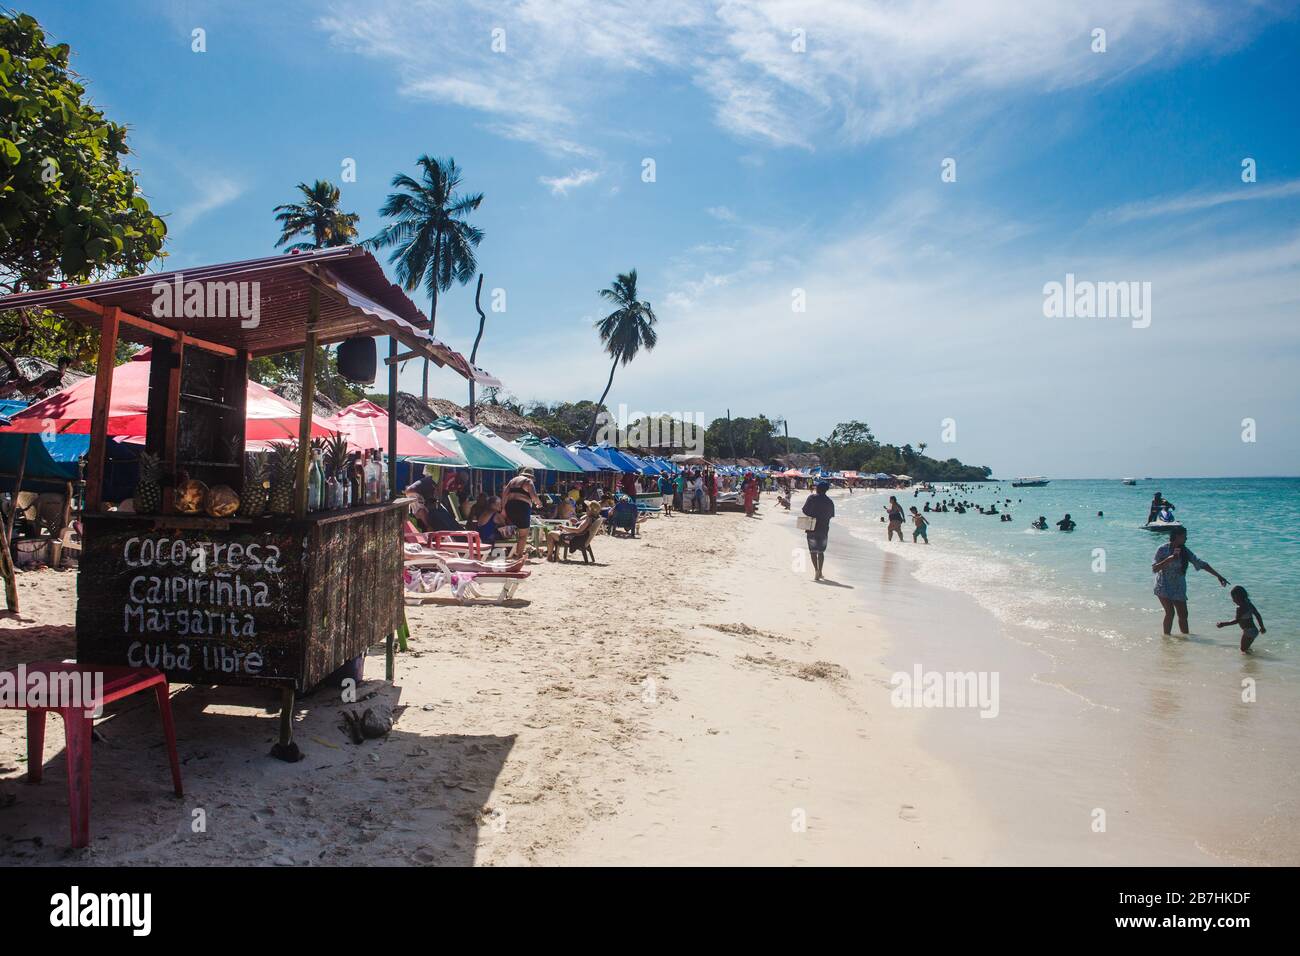 Bancarelle di cocktail e sedie a sdraio sulla trafficata spiaggia di sabbia bianca e acque turchesi dell'isola di Baru al largo della costa caraibica di Cartagena, Colombia Foto Stock